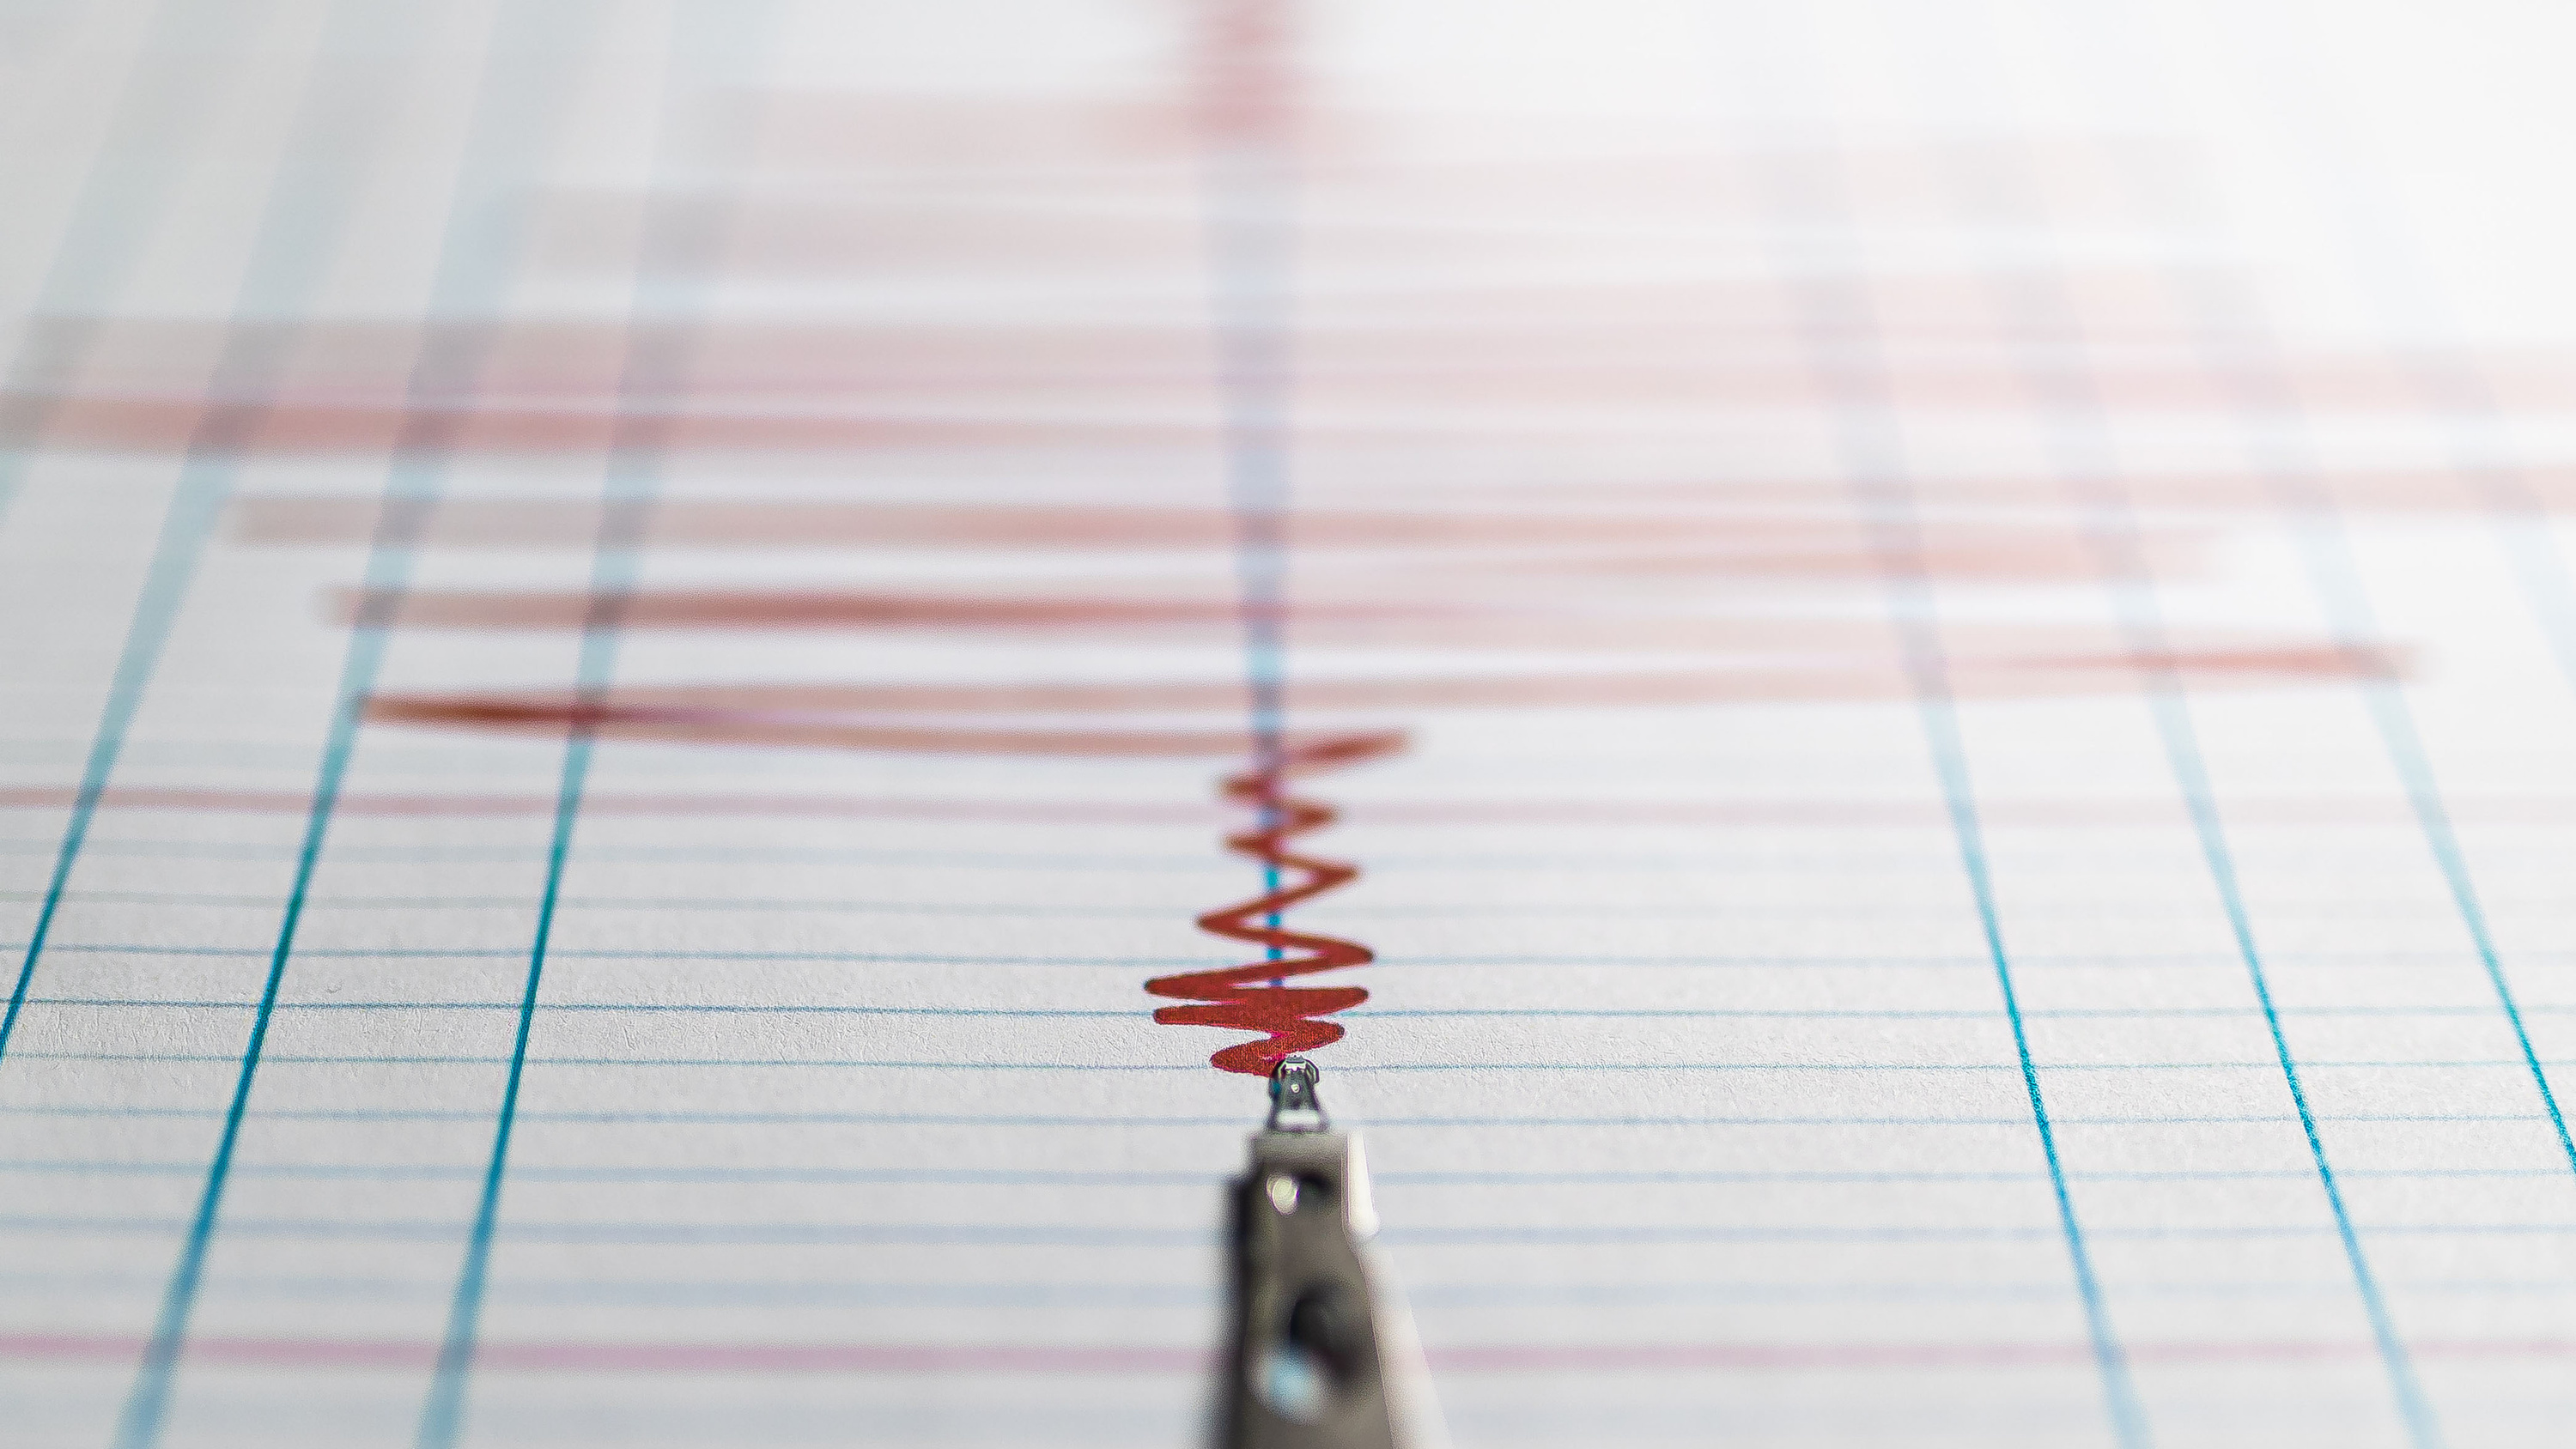 Землетрясение магнитудой 3,1 произошло в Кузбассе. Эпицентр находился в районе крупной шахты